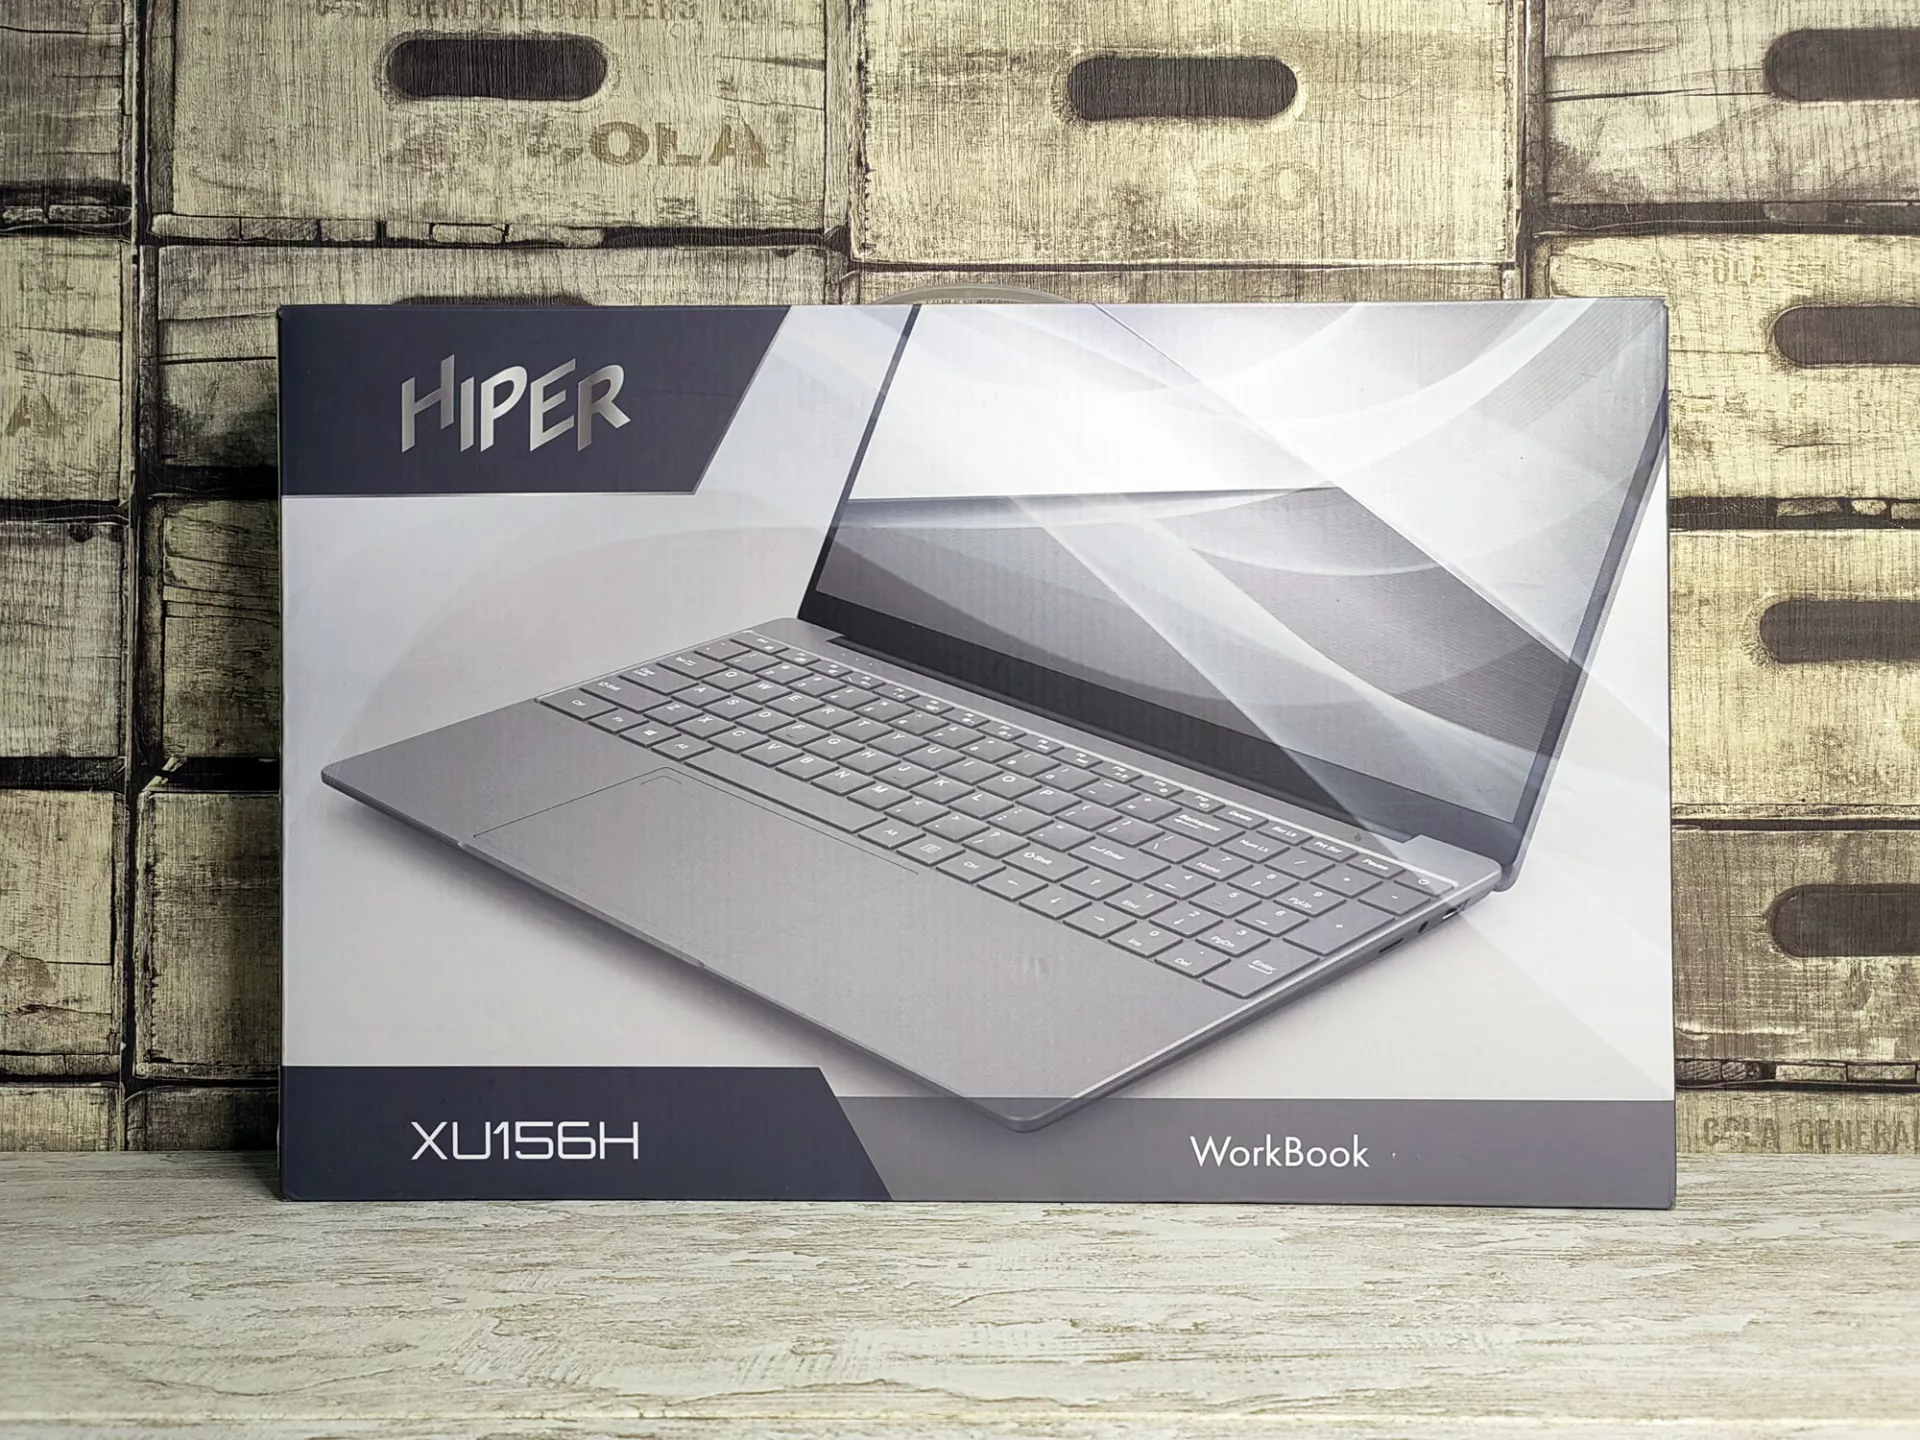 Тест-драйв ноутбука Hiper WorkBook XU156H